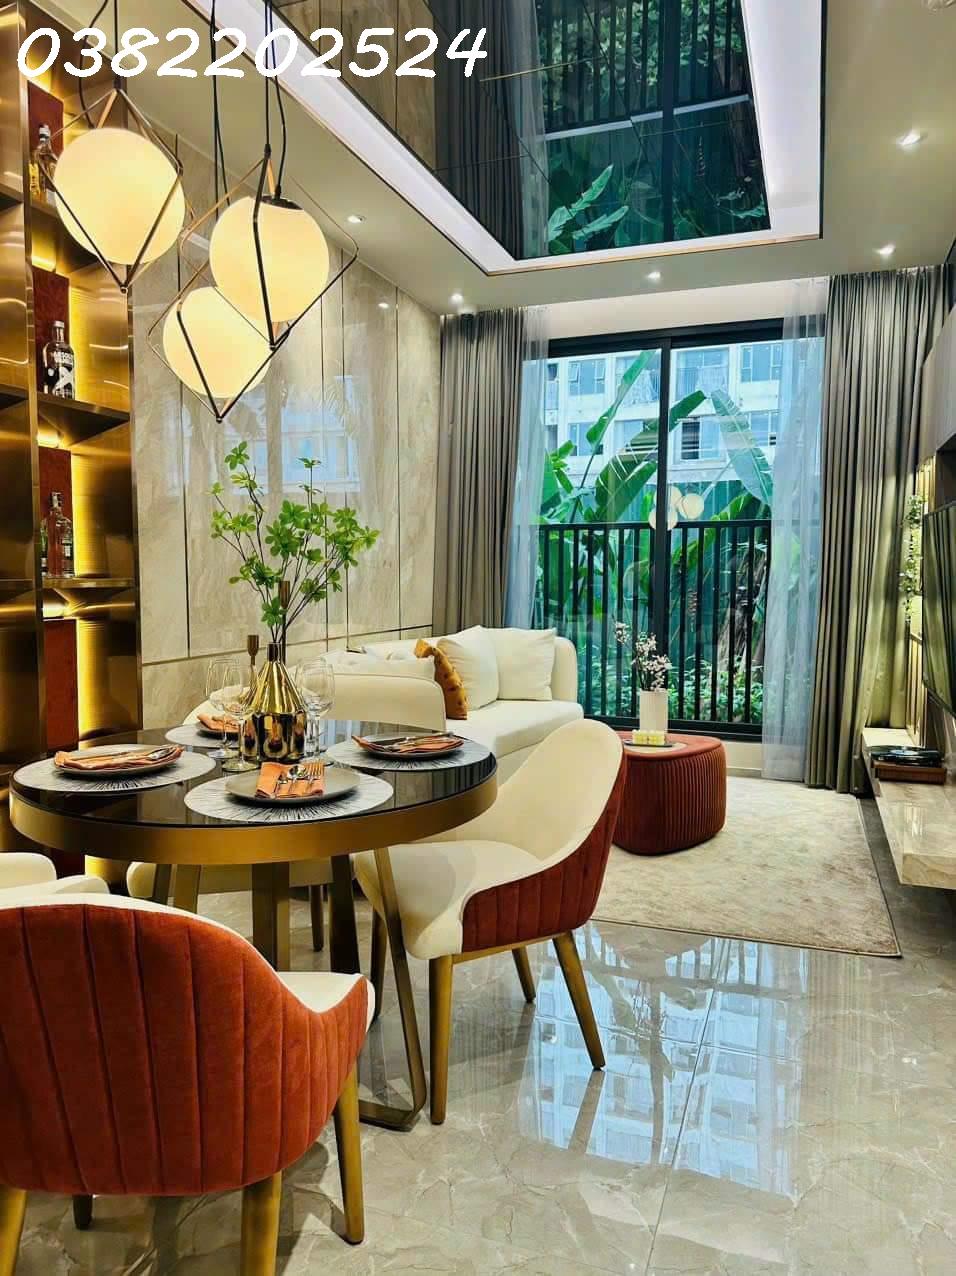 Tặng full nội thất như hình, căn hộ cao cấp mặt tiền Phạm Văn Đồng giá chỉ từ 1,5 tỷ LH 0382202524 2